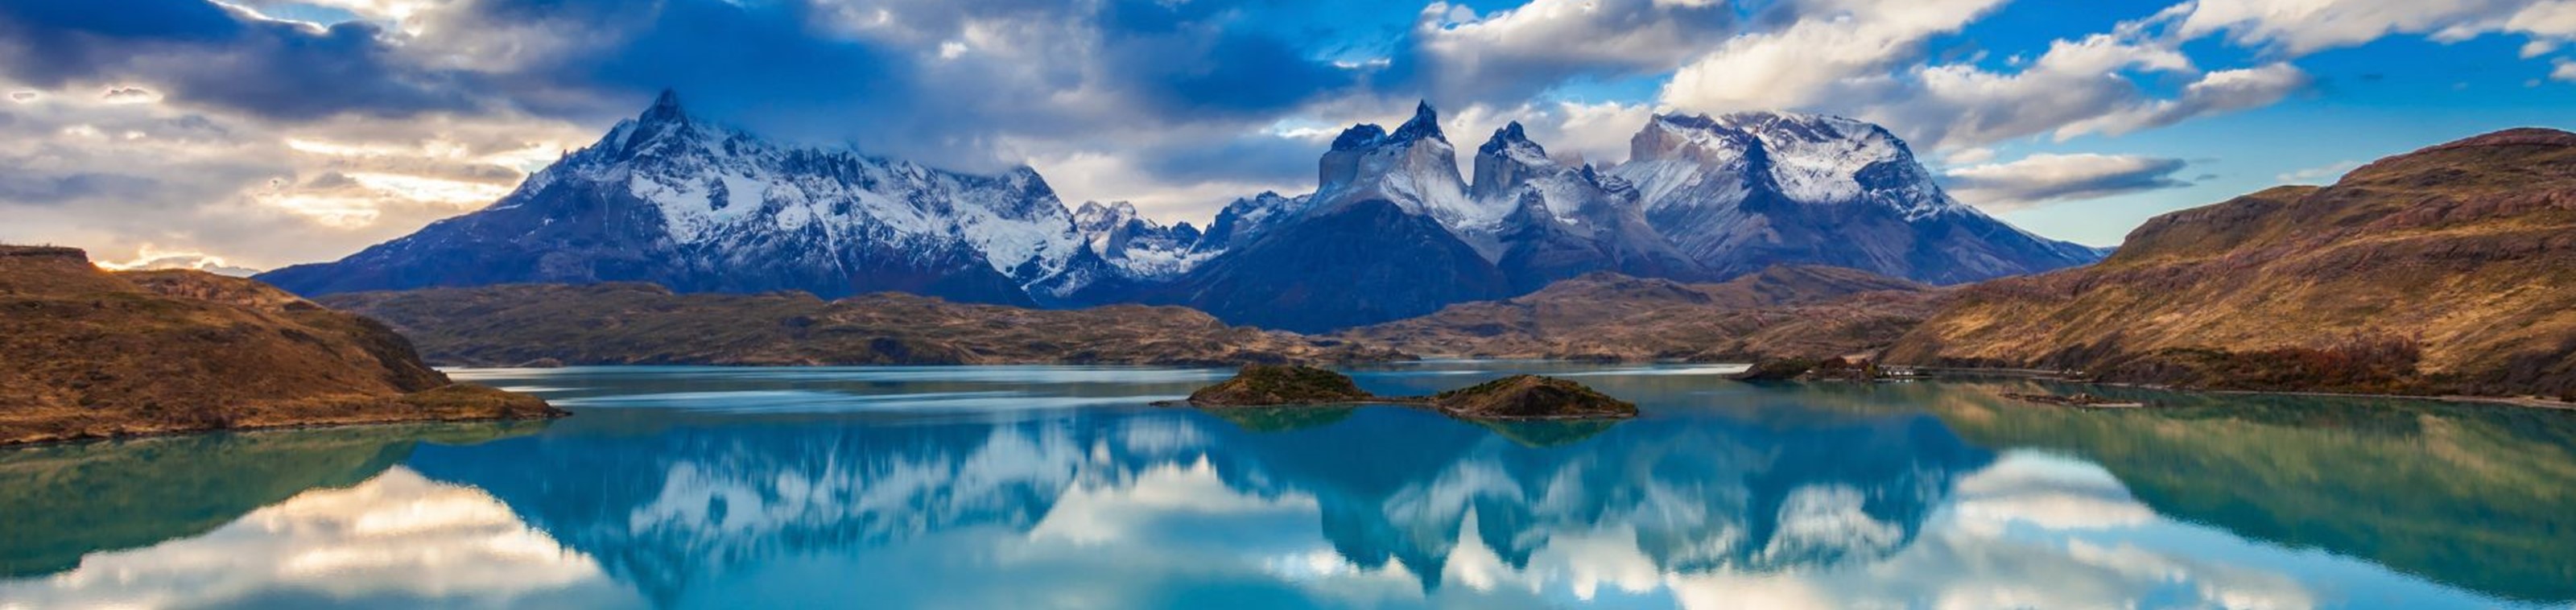 13-daagse rondreis Chili: van Atacama tot Patagonia